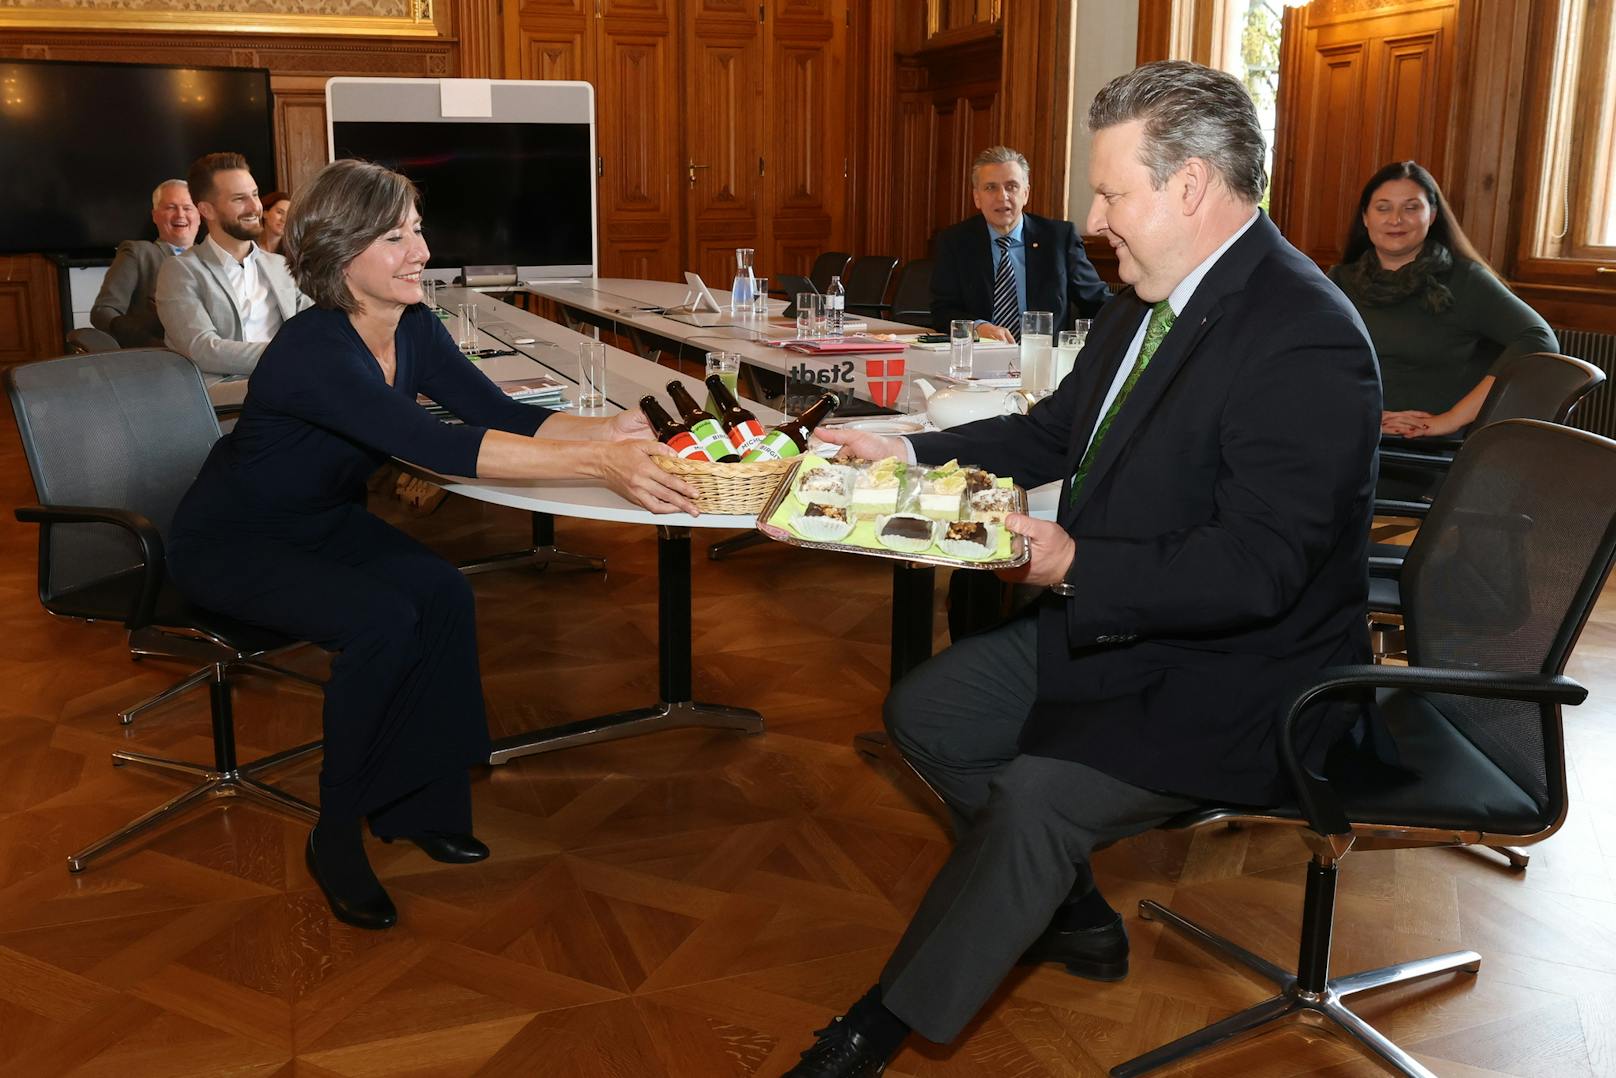 Grünen-Chefin Birgit Hebein überraschte Bürgermeister Michael Ludwig (SPÖ) mit Bier, er revanchierte sich mit veganer Bio-Bäckerei und Green Smoothies.